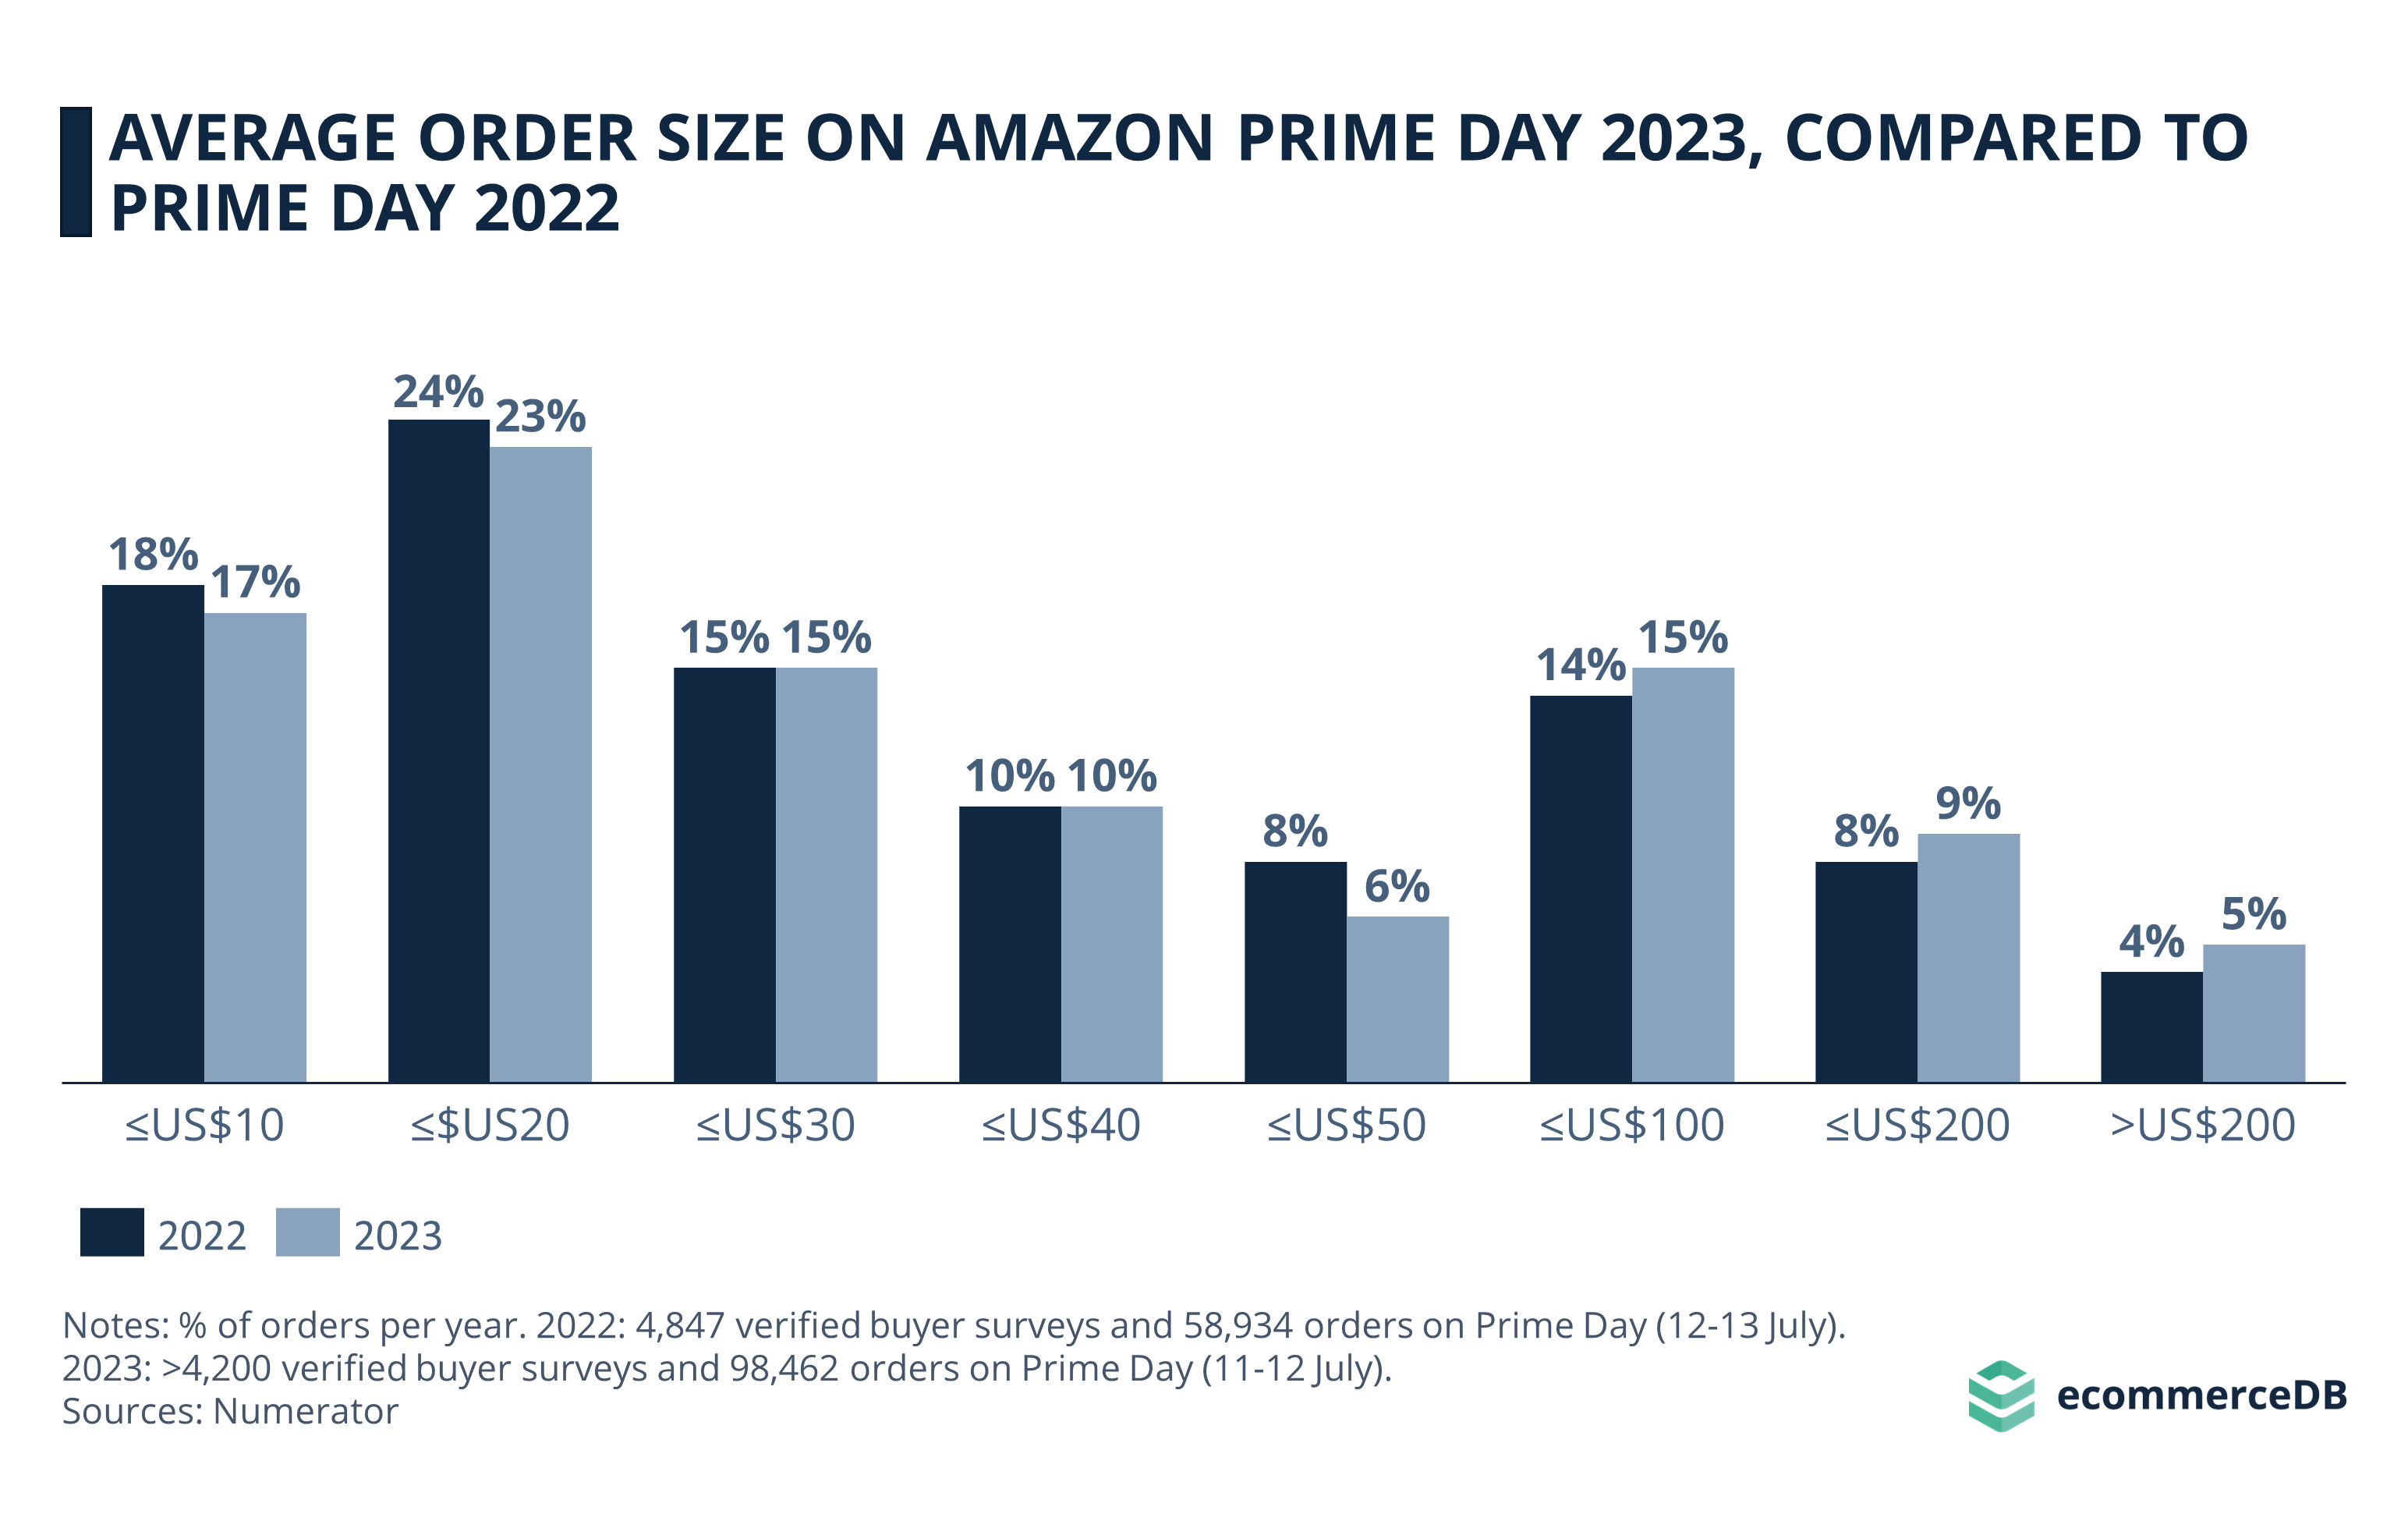 Prime Day 2023 Average Order Size vs. 2022